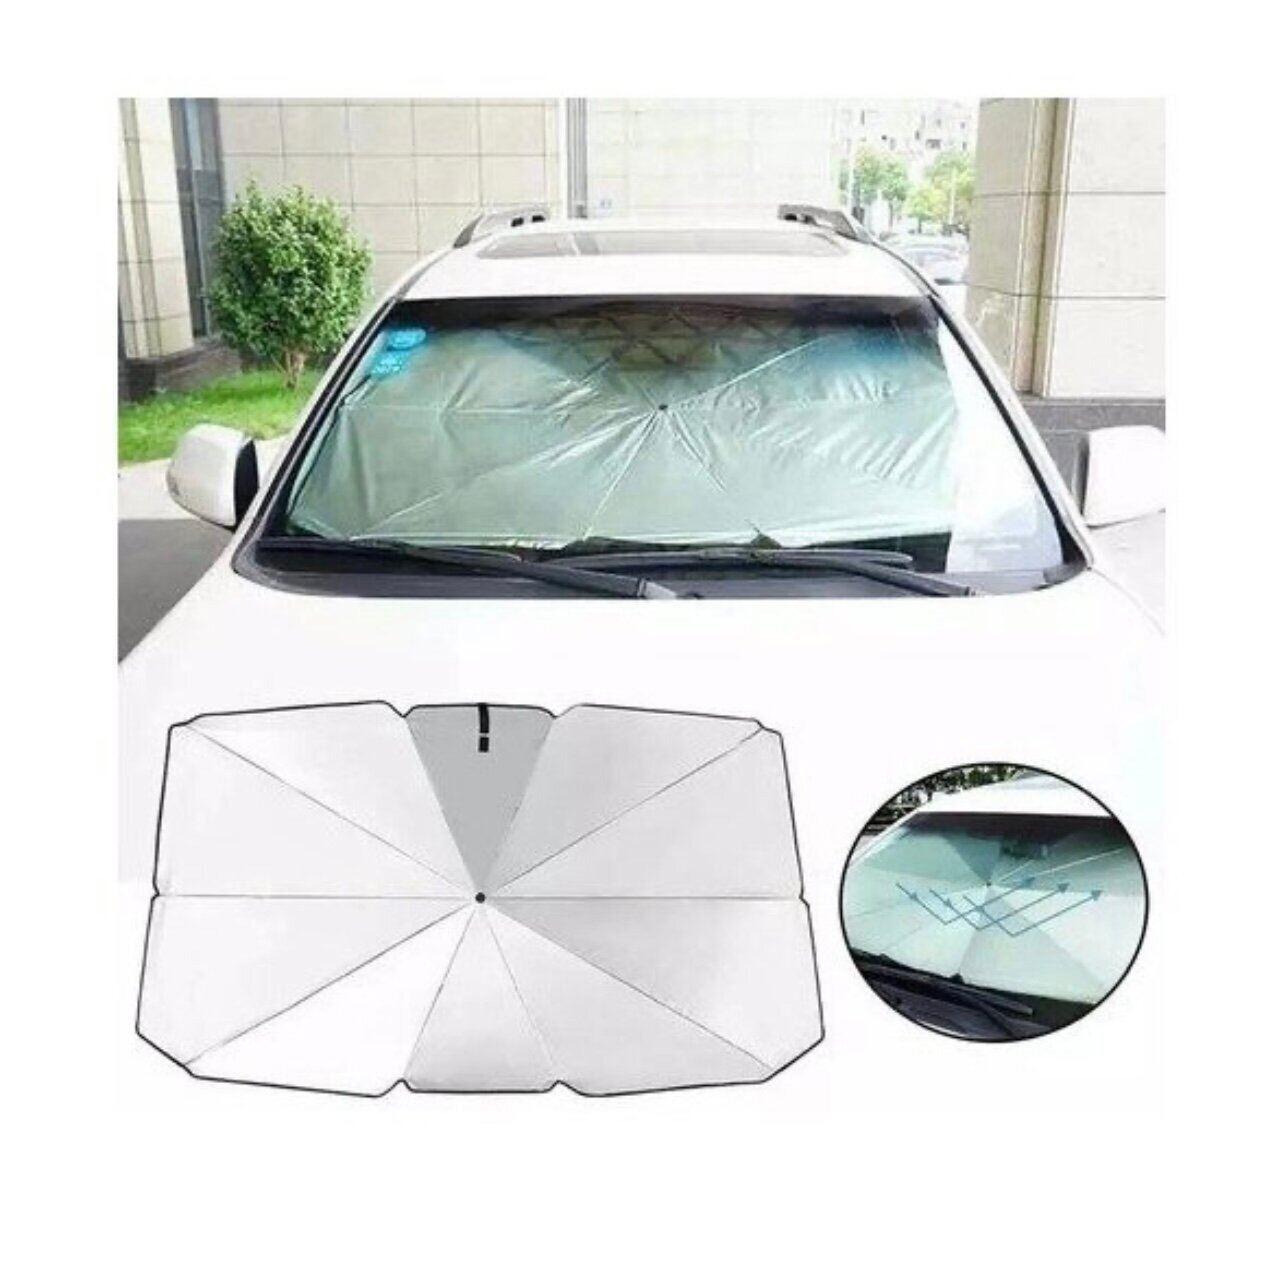 Зонт солнцезащитный для лобового стекла автомобиля 140х80 см.